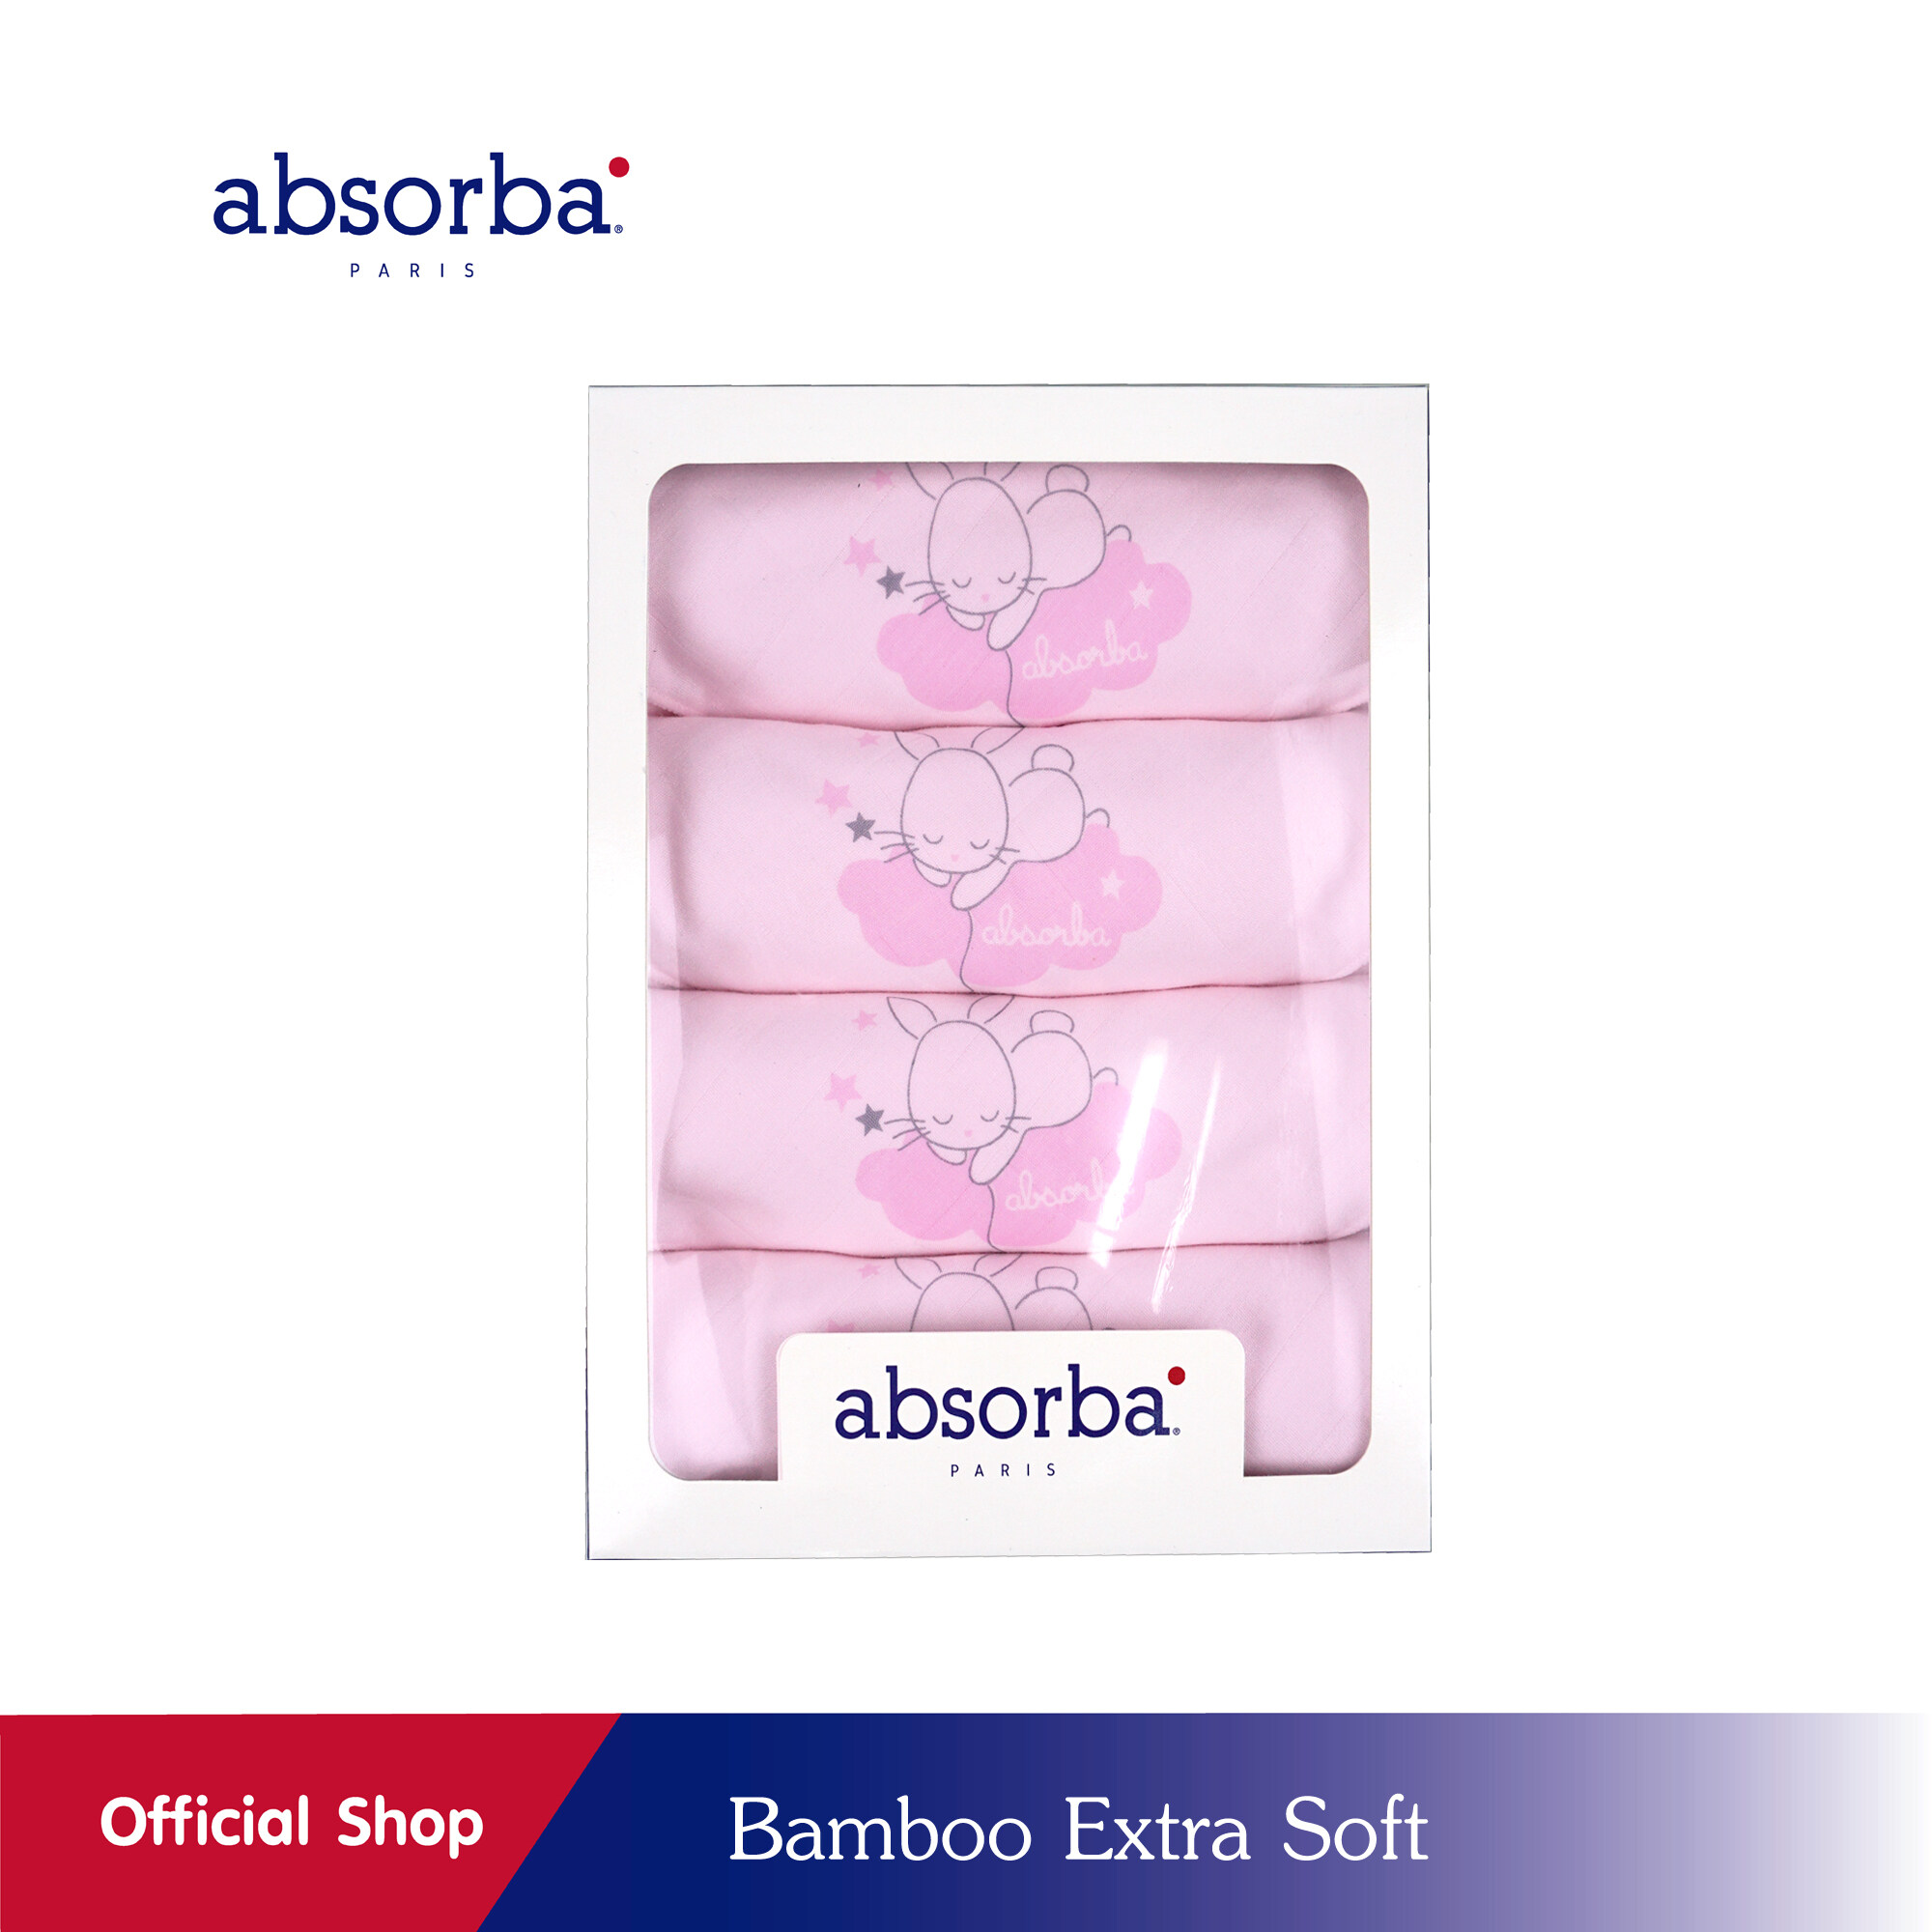 แนะนำ absorba (แอ๊บซอร์บา) ผ้าอ้อมผ้าเยื่อไผ่ Bamboo Extra Soft สีชมพู ขนาด 30x30 นิ้ว (แพ็ค 4 ผืน) - R6G142PI00